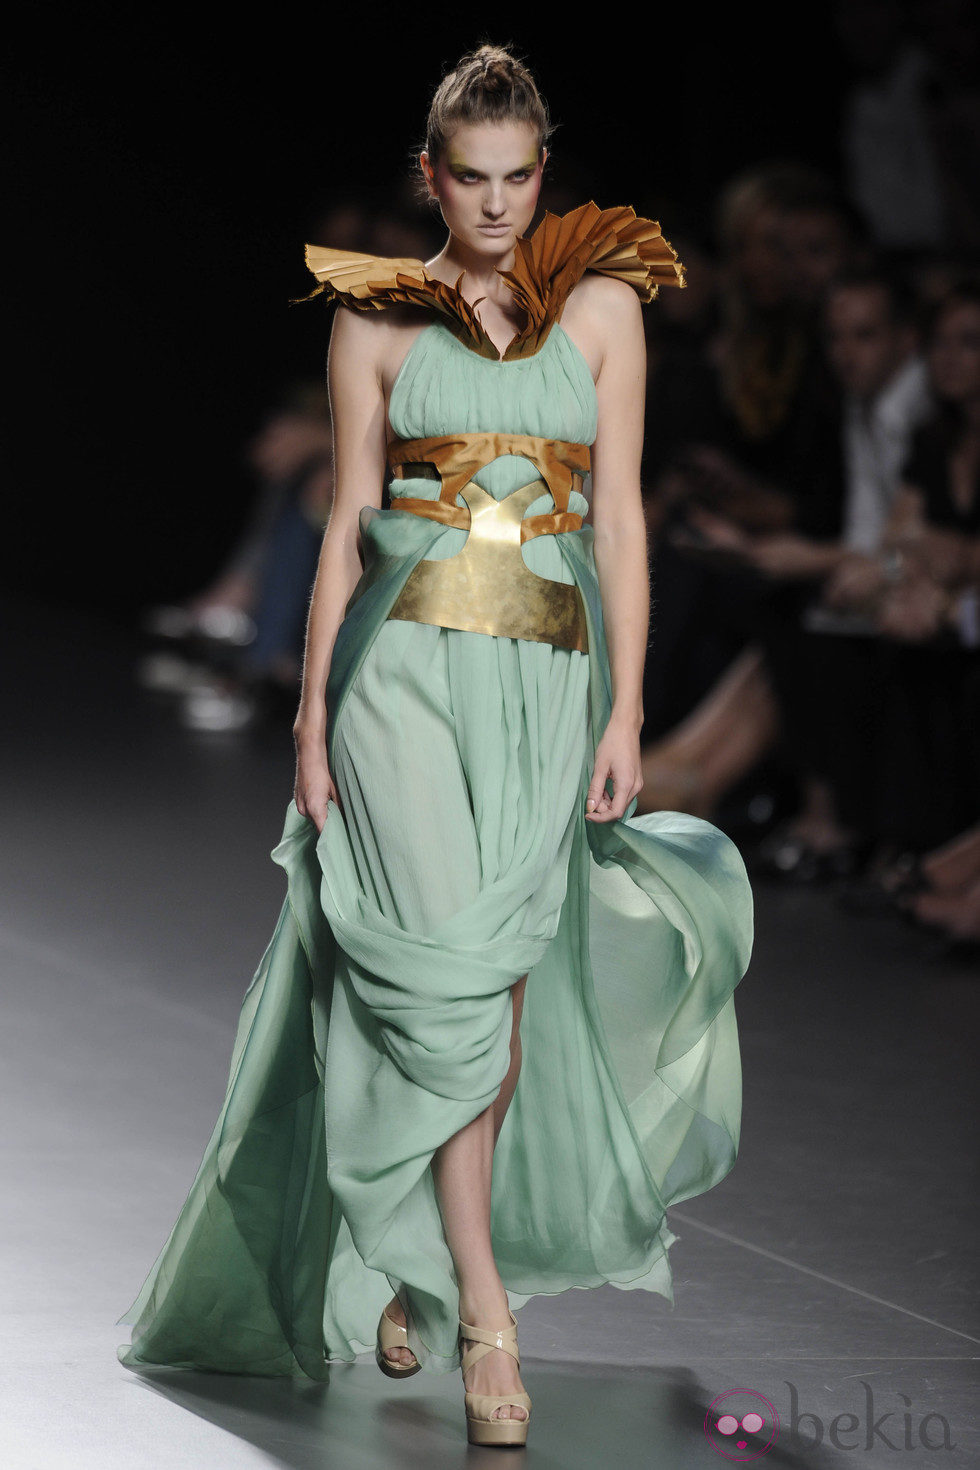 Vestido verde pastel largo con hombreras doradas de la colección primavera/verano 2013 de Leyre Valiente